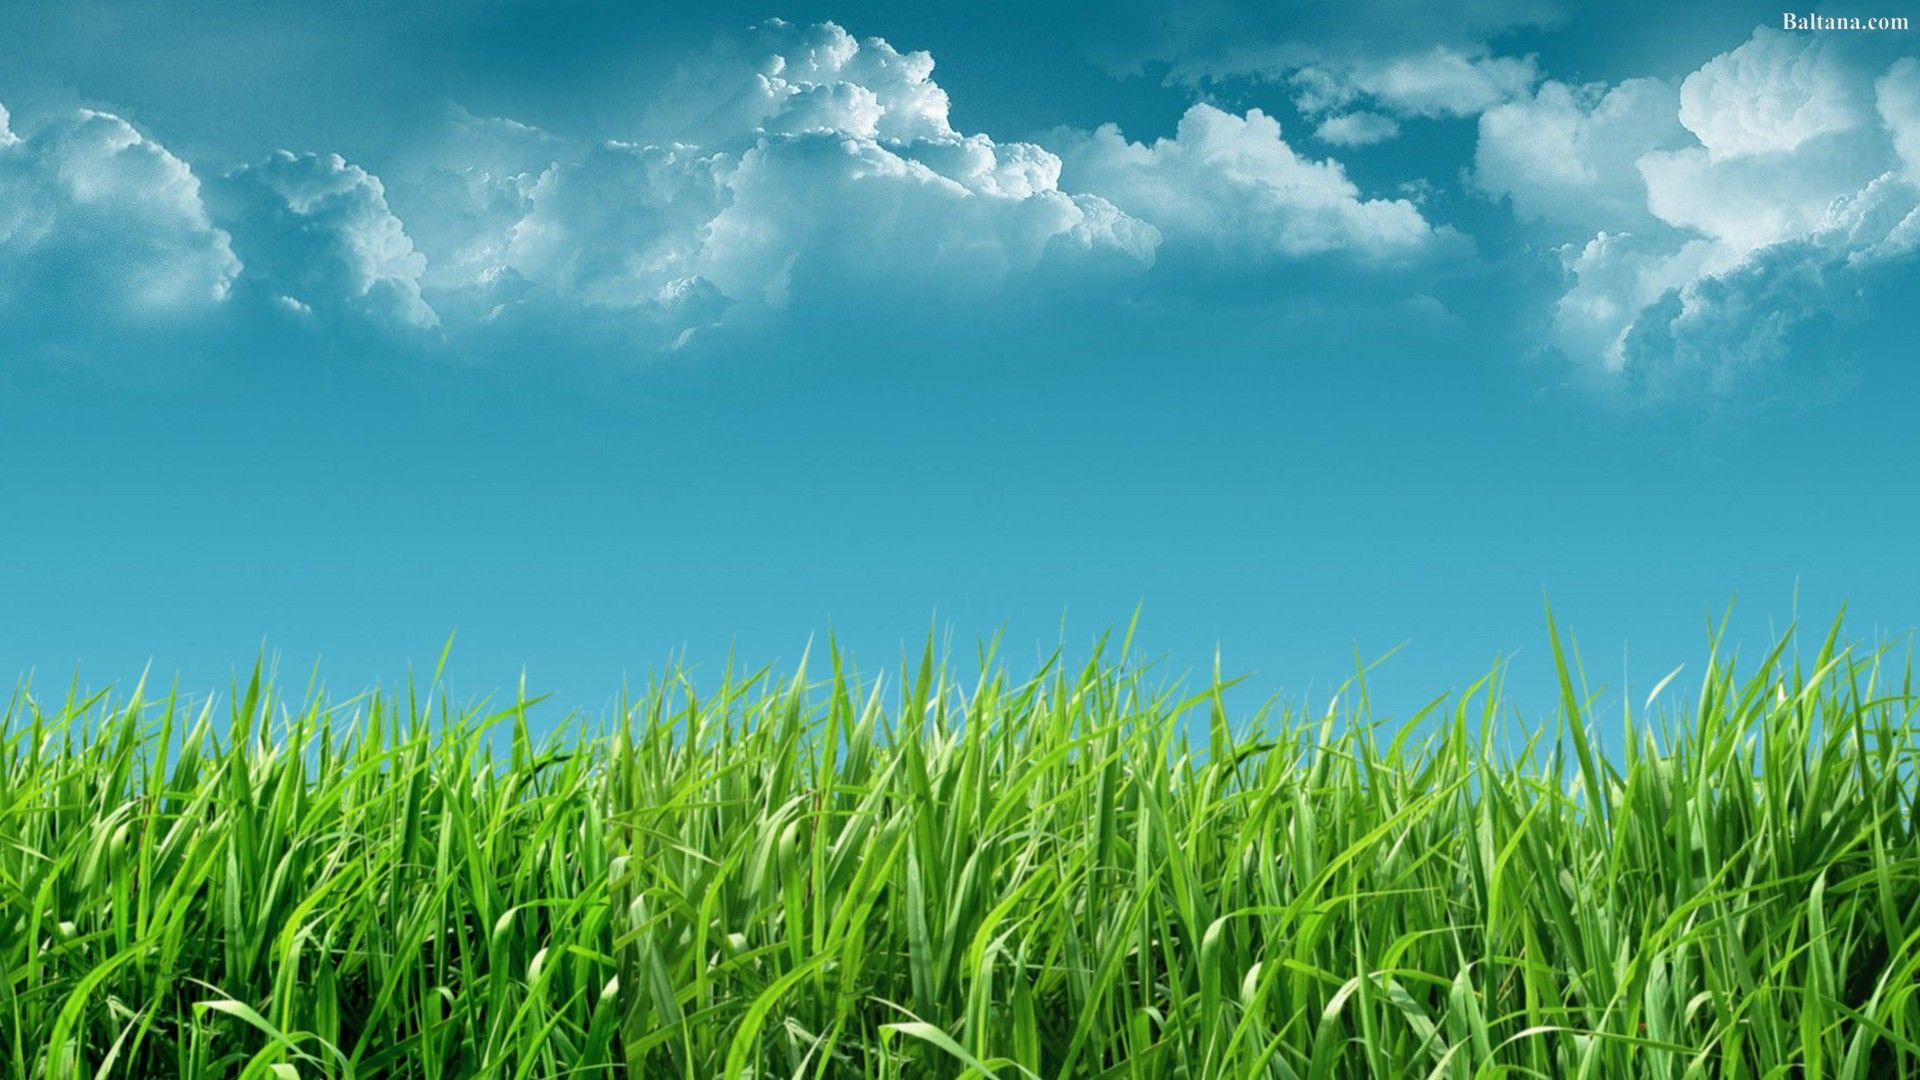 Grass Wallpaper Free Grass Background